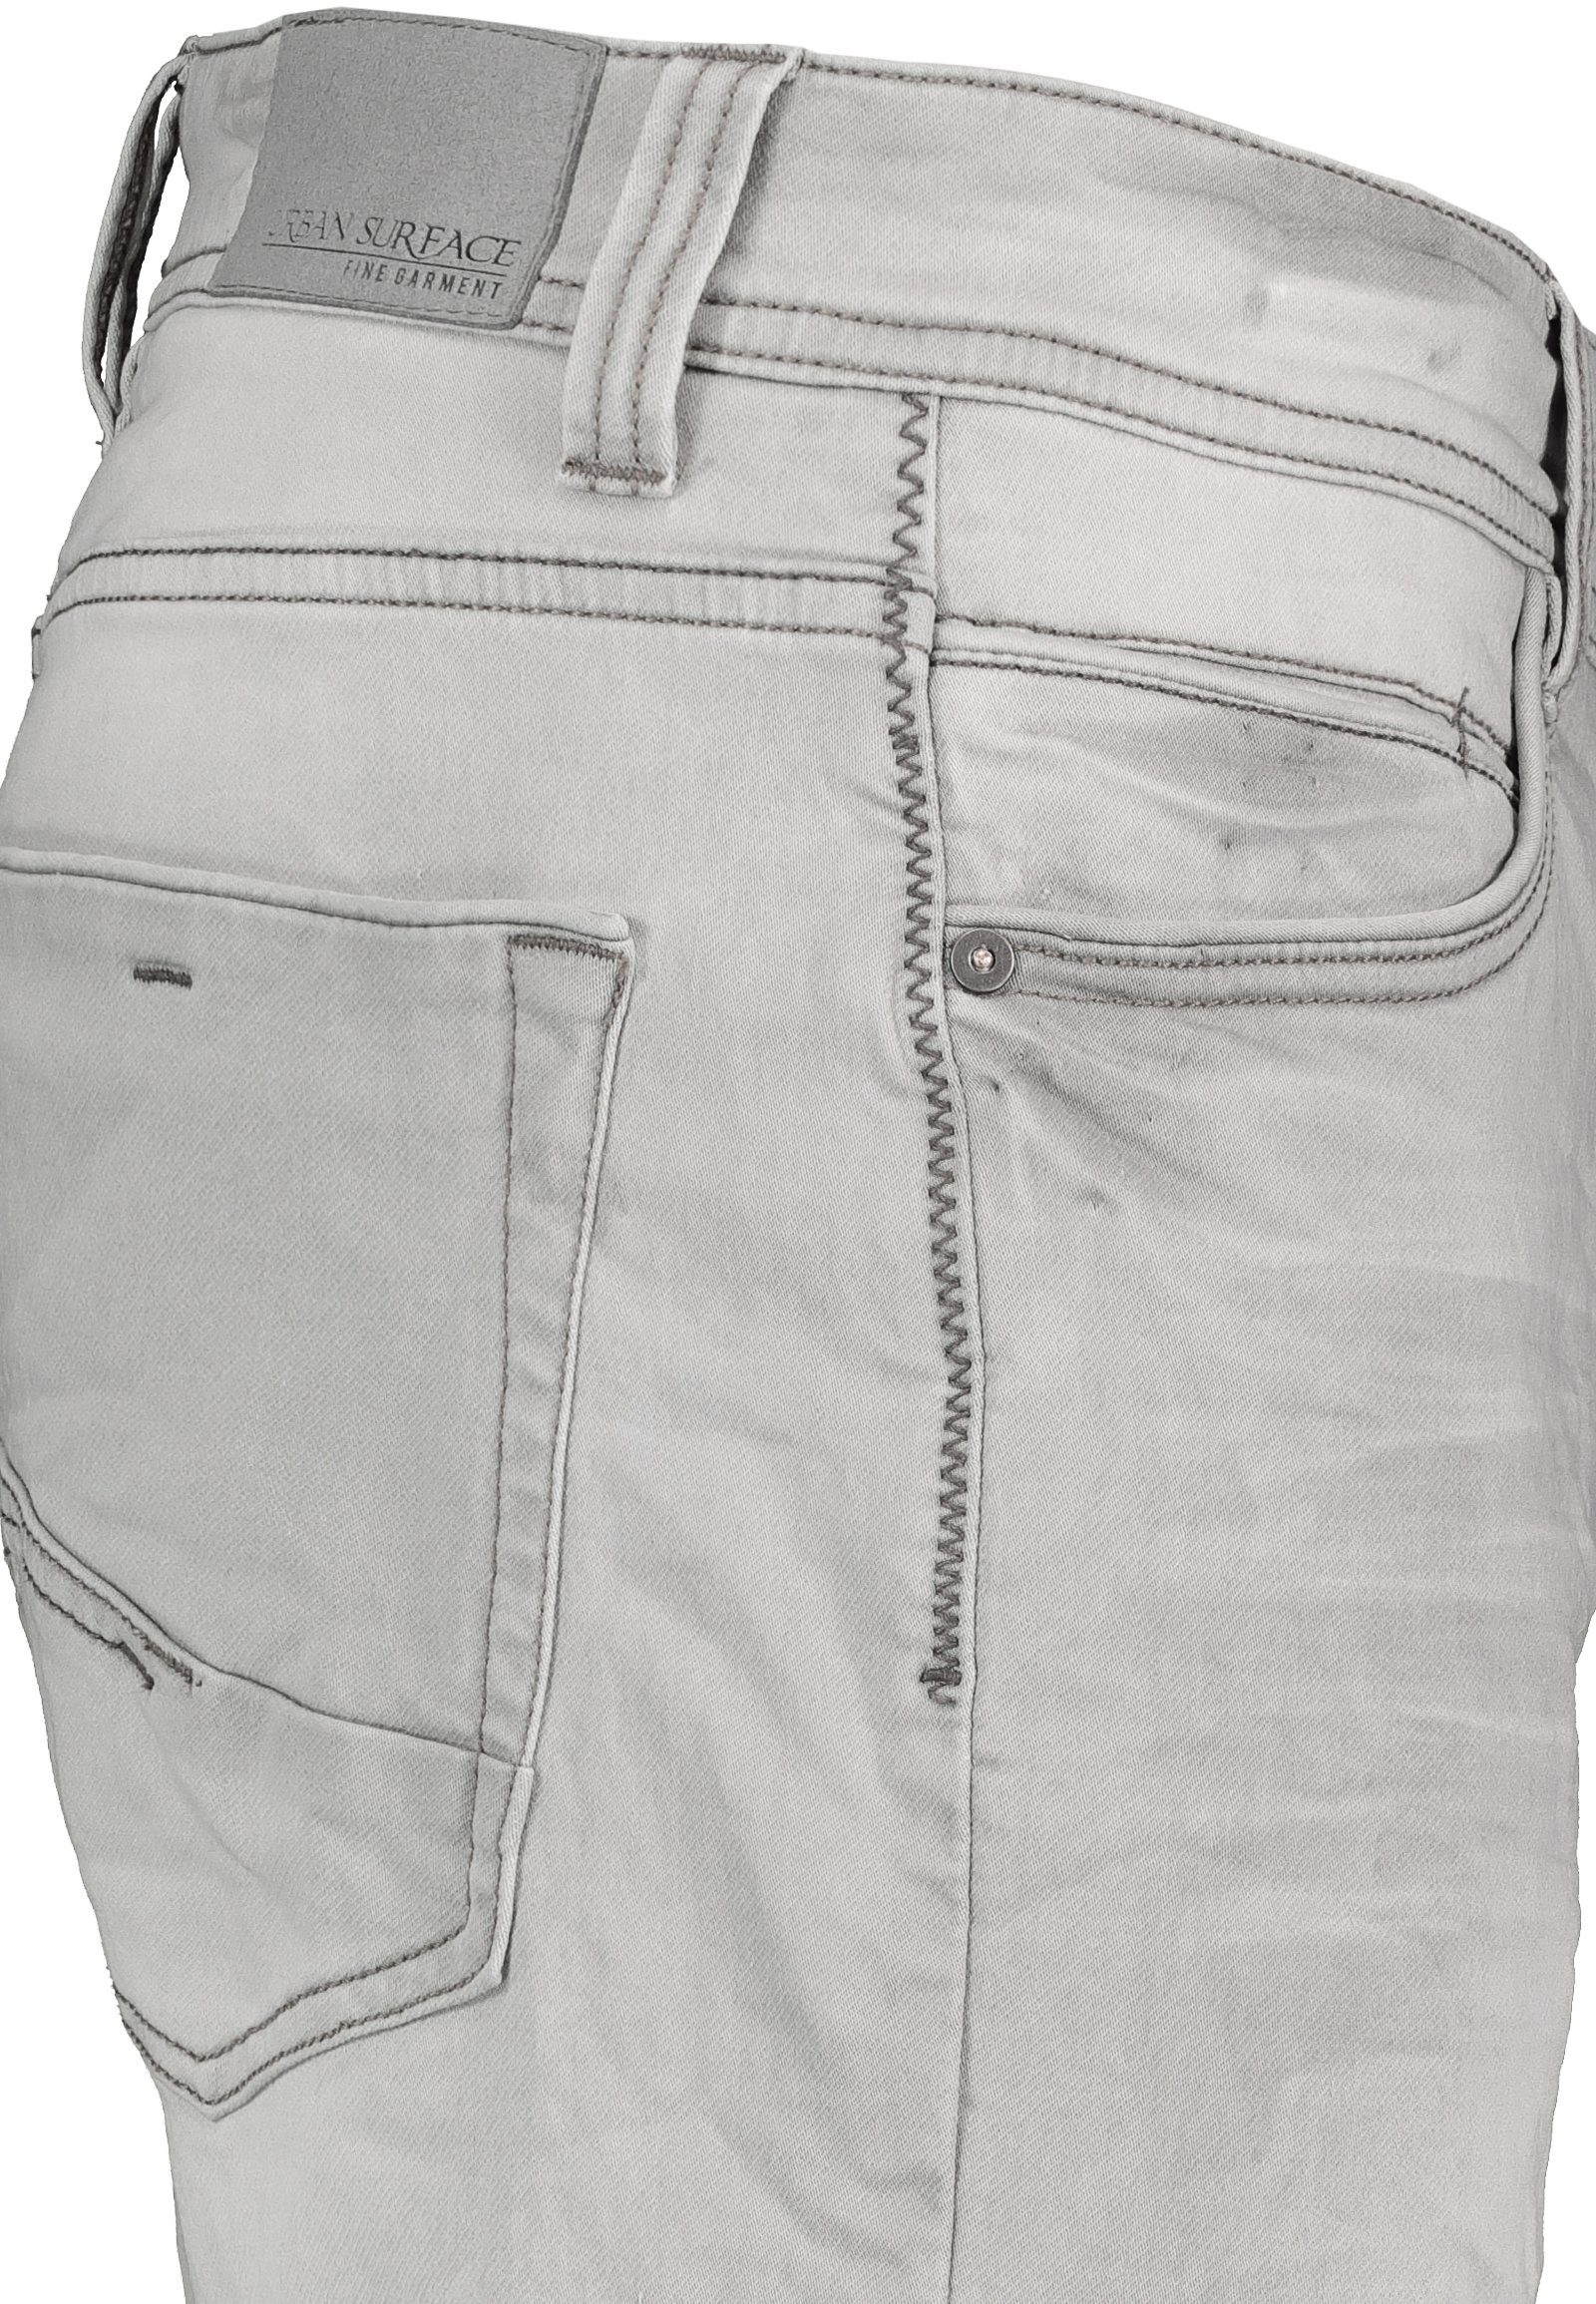 Bermudas kurze Surface Jeans Grey Freizeit Urban Denim Herren Hose Jogging Sweat denim Shorts Bermuda